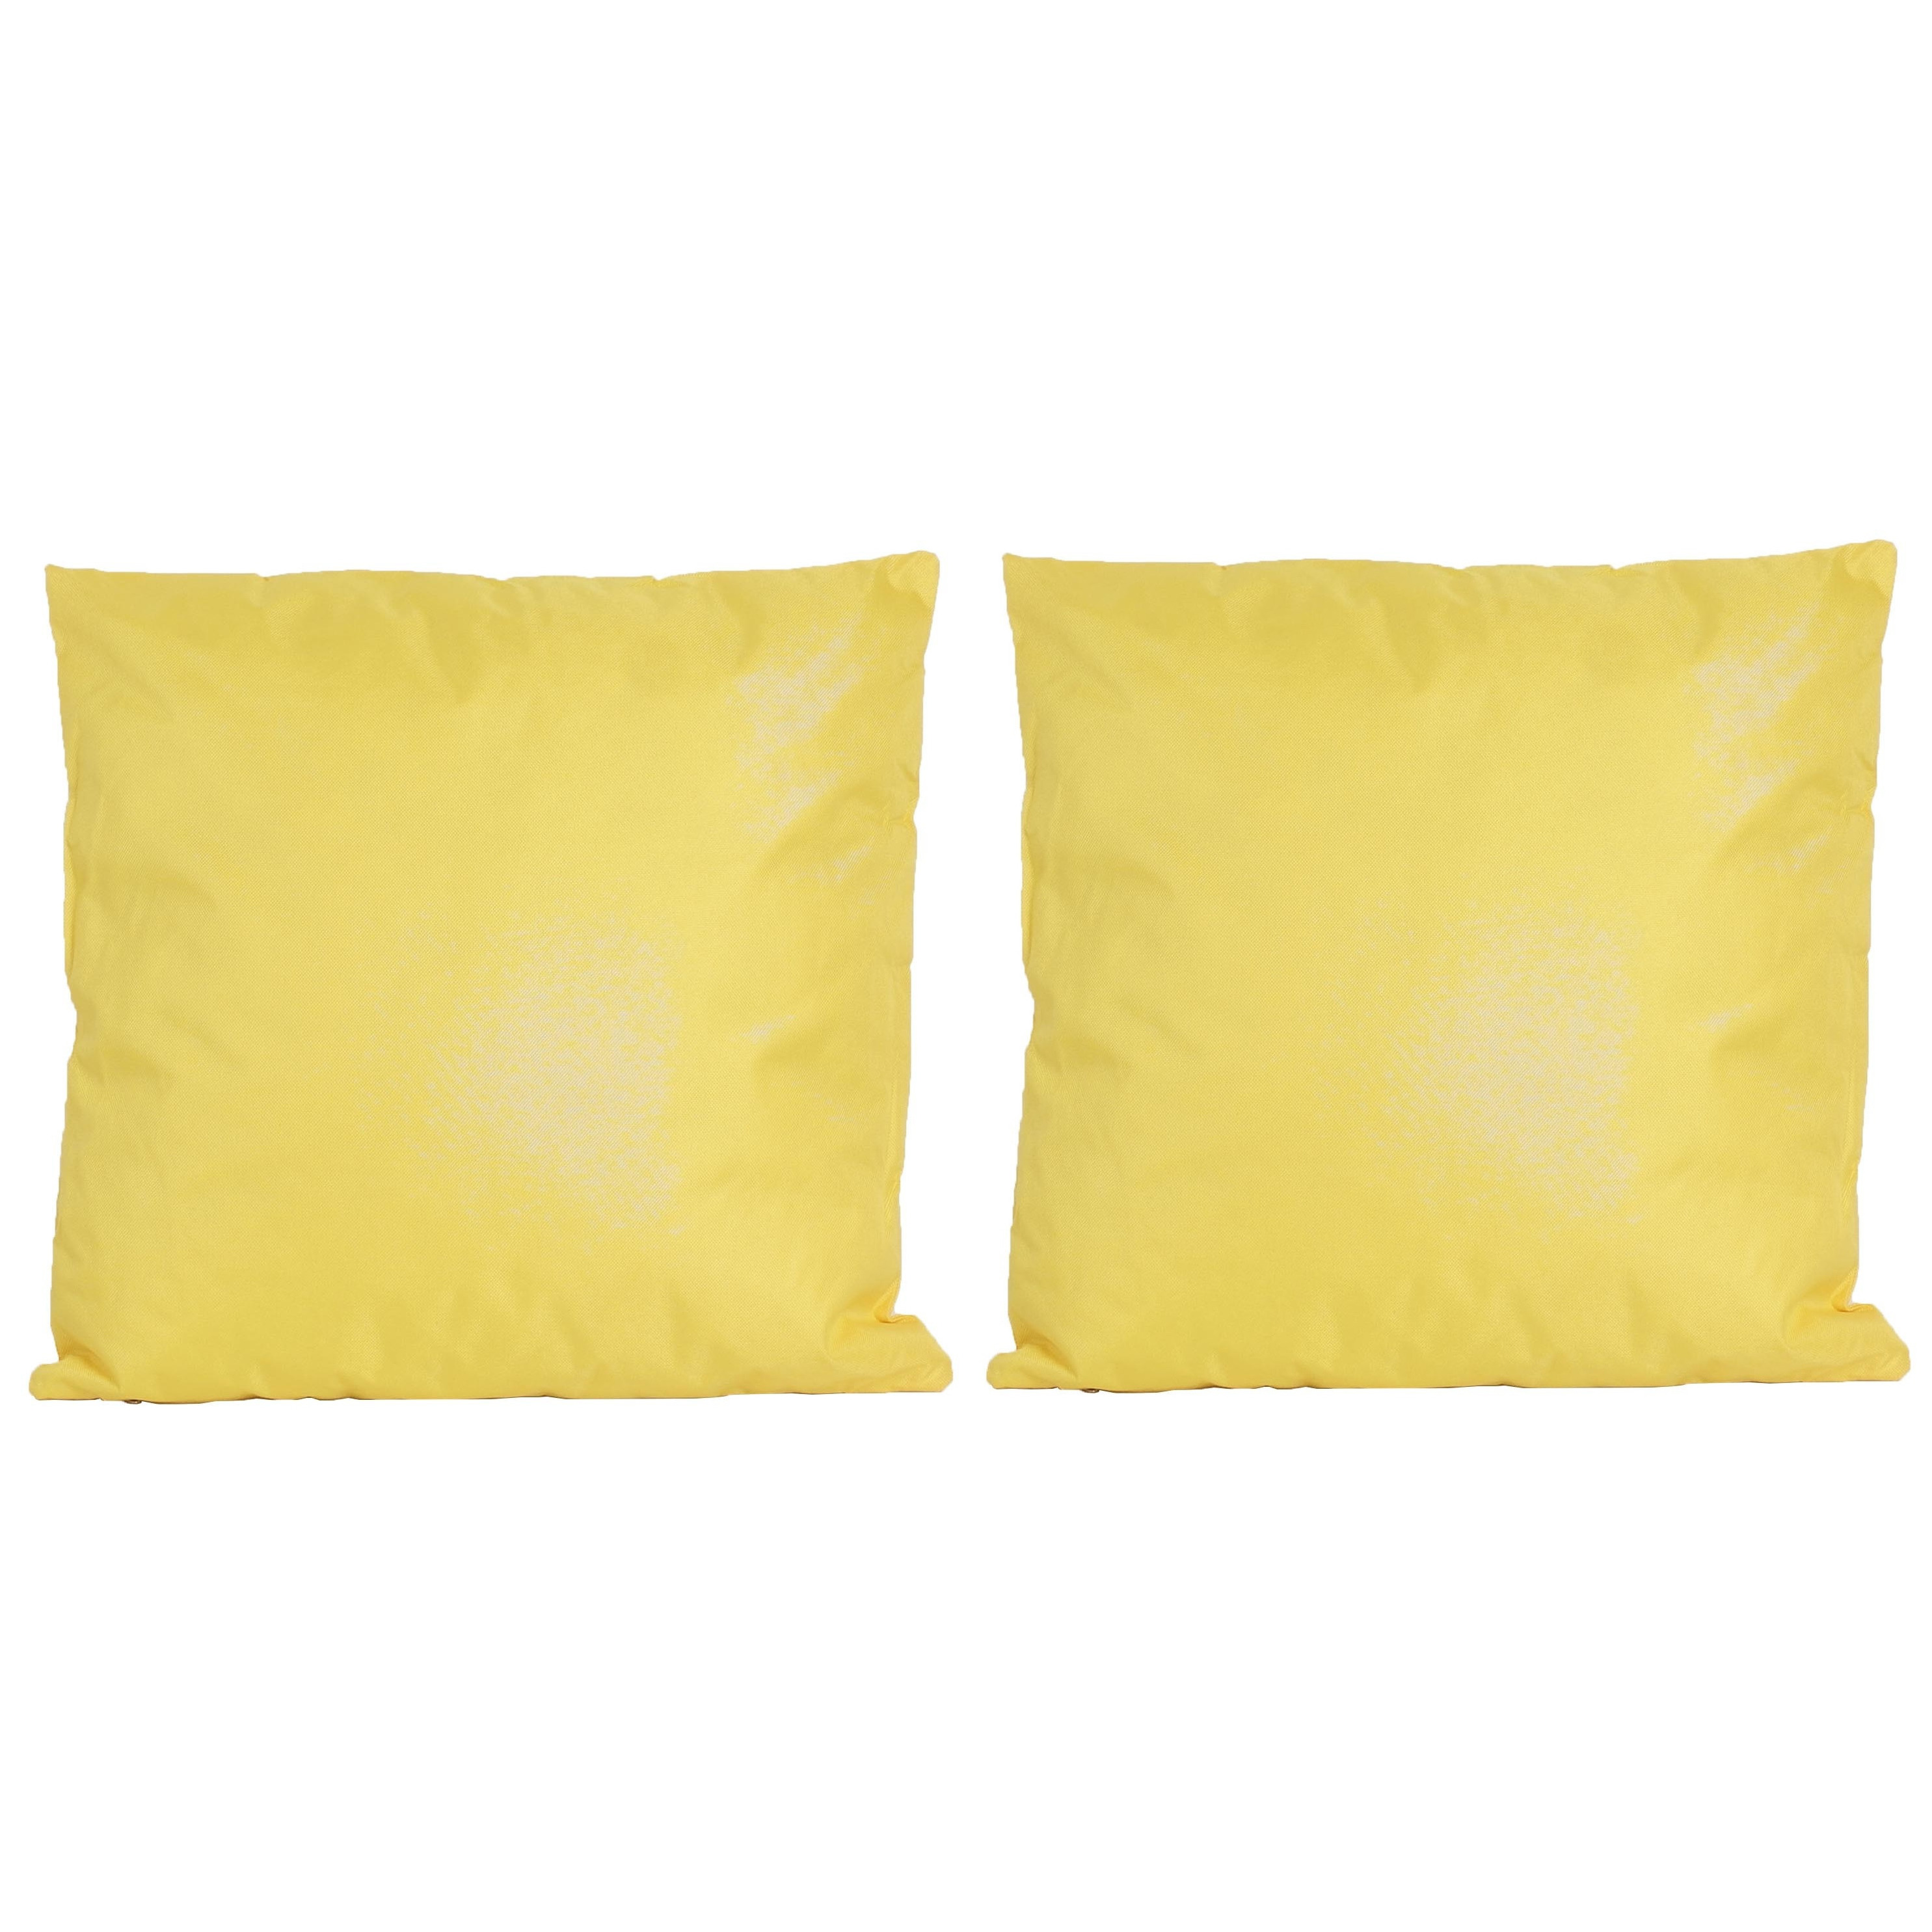 4x Bank-sier kussens voor binnen en buiten in de kleur geel 45 x 45 cm